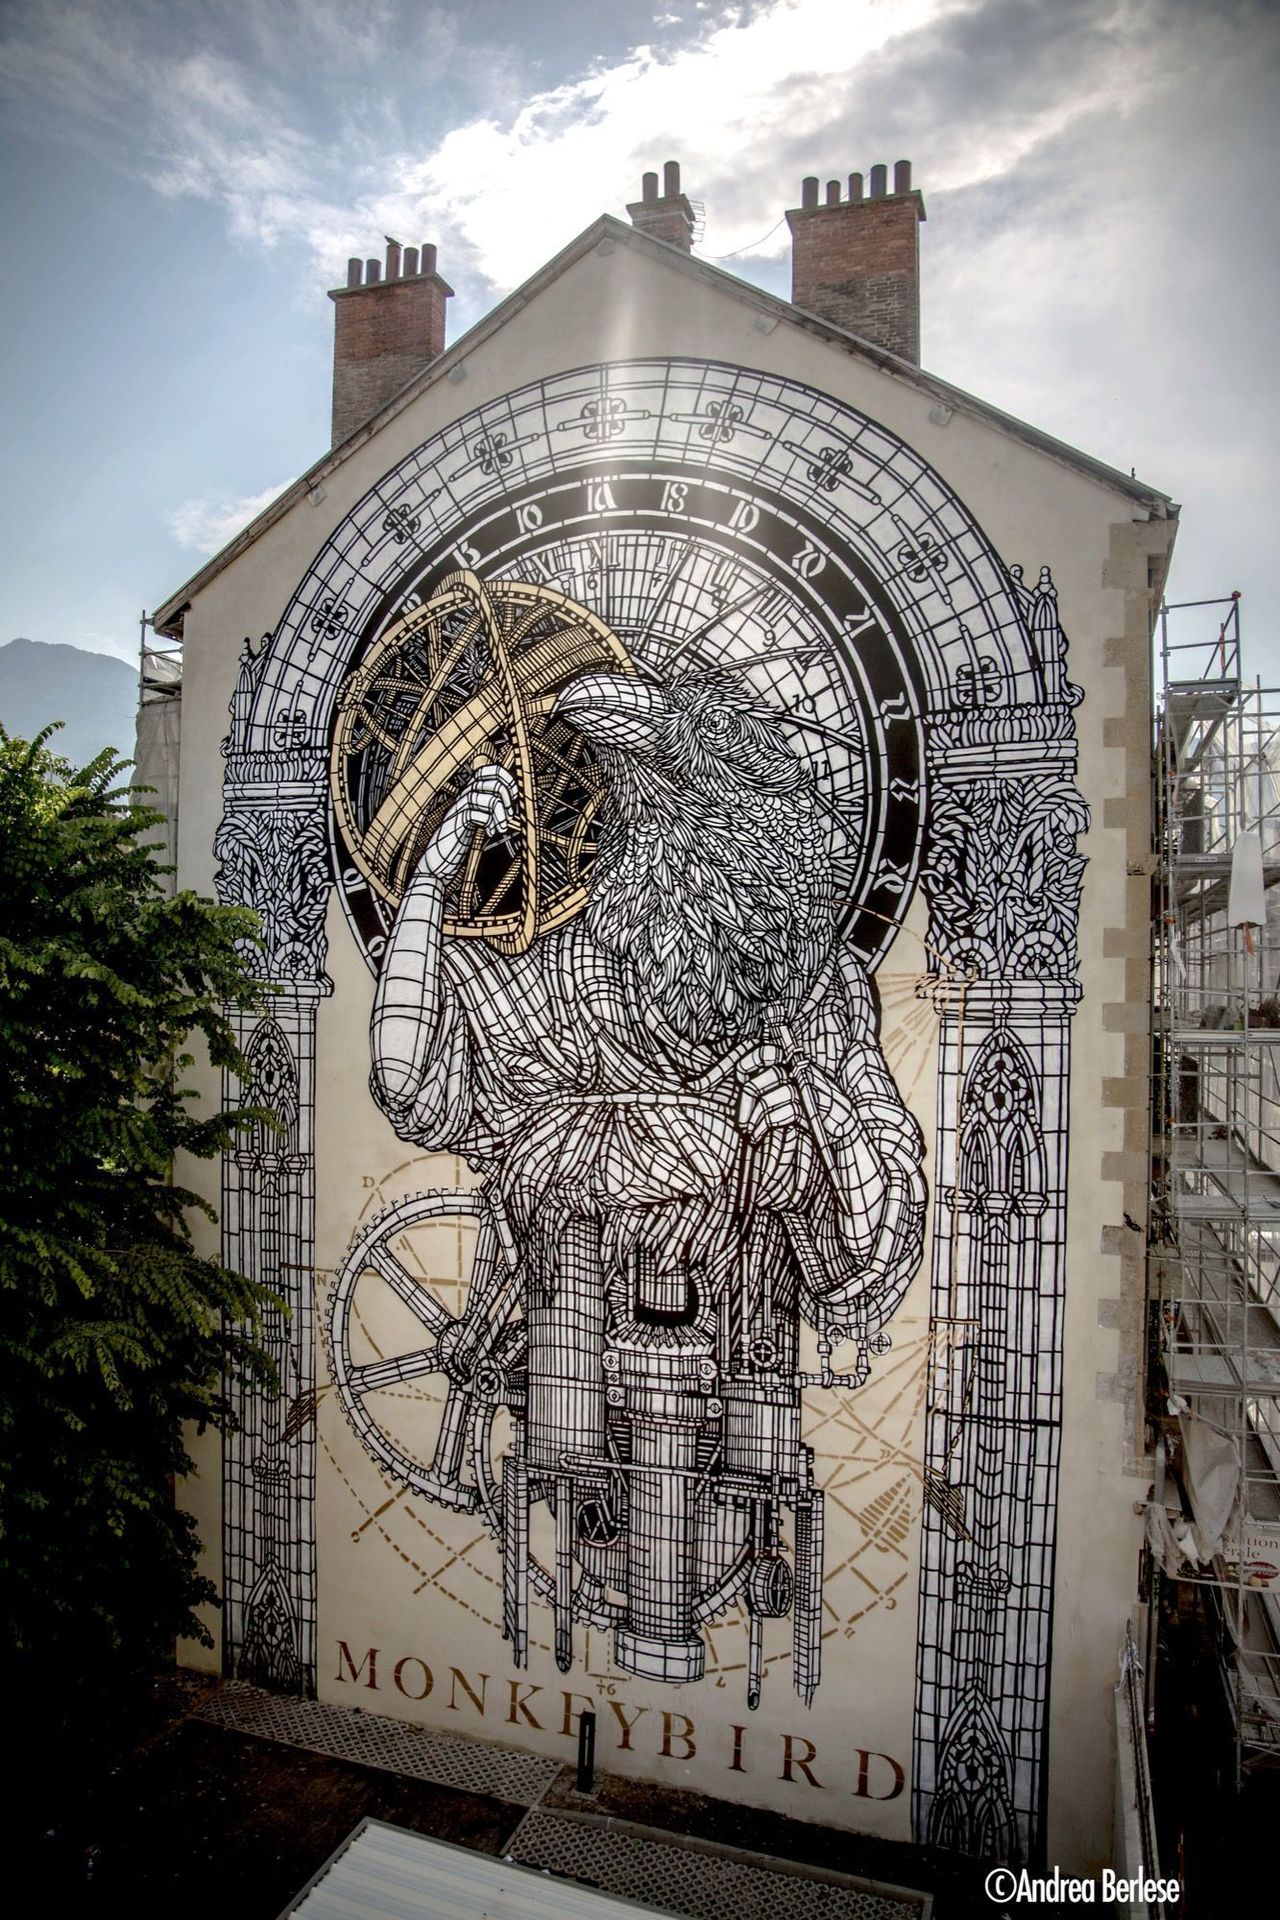 Monkeybird in Grenoble, France#streetart #mural #graffiti #art https://t.co/K4eEZiND6T